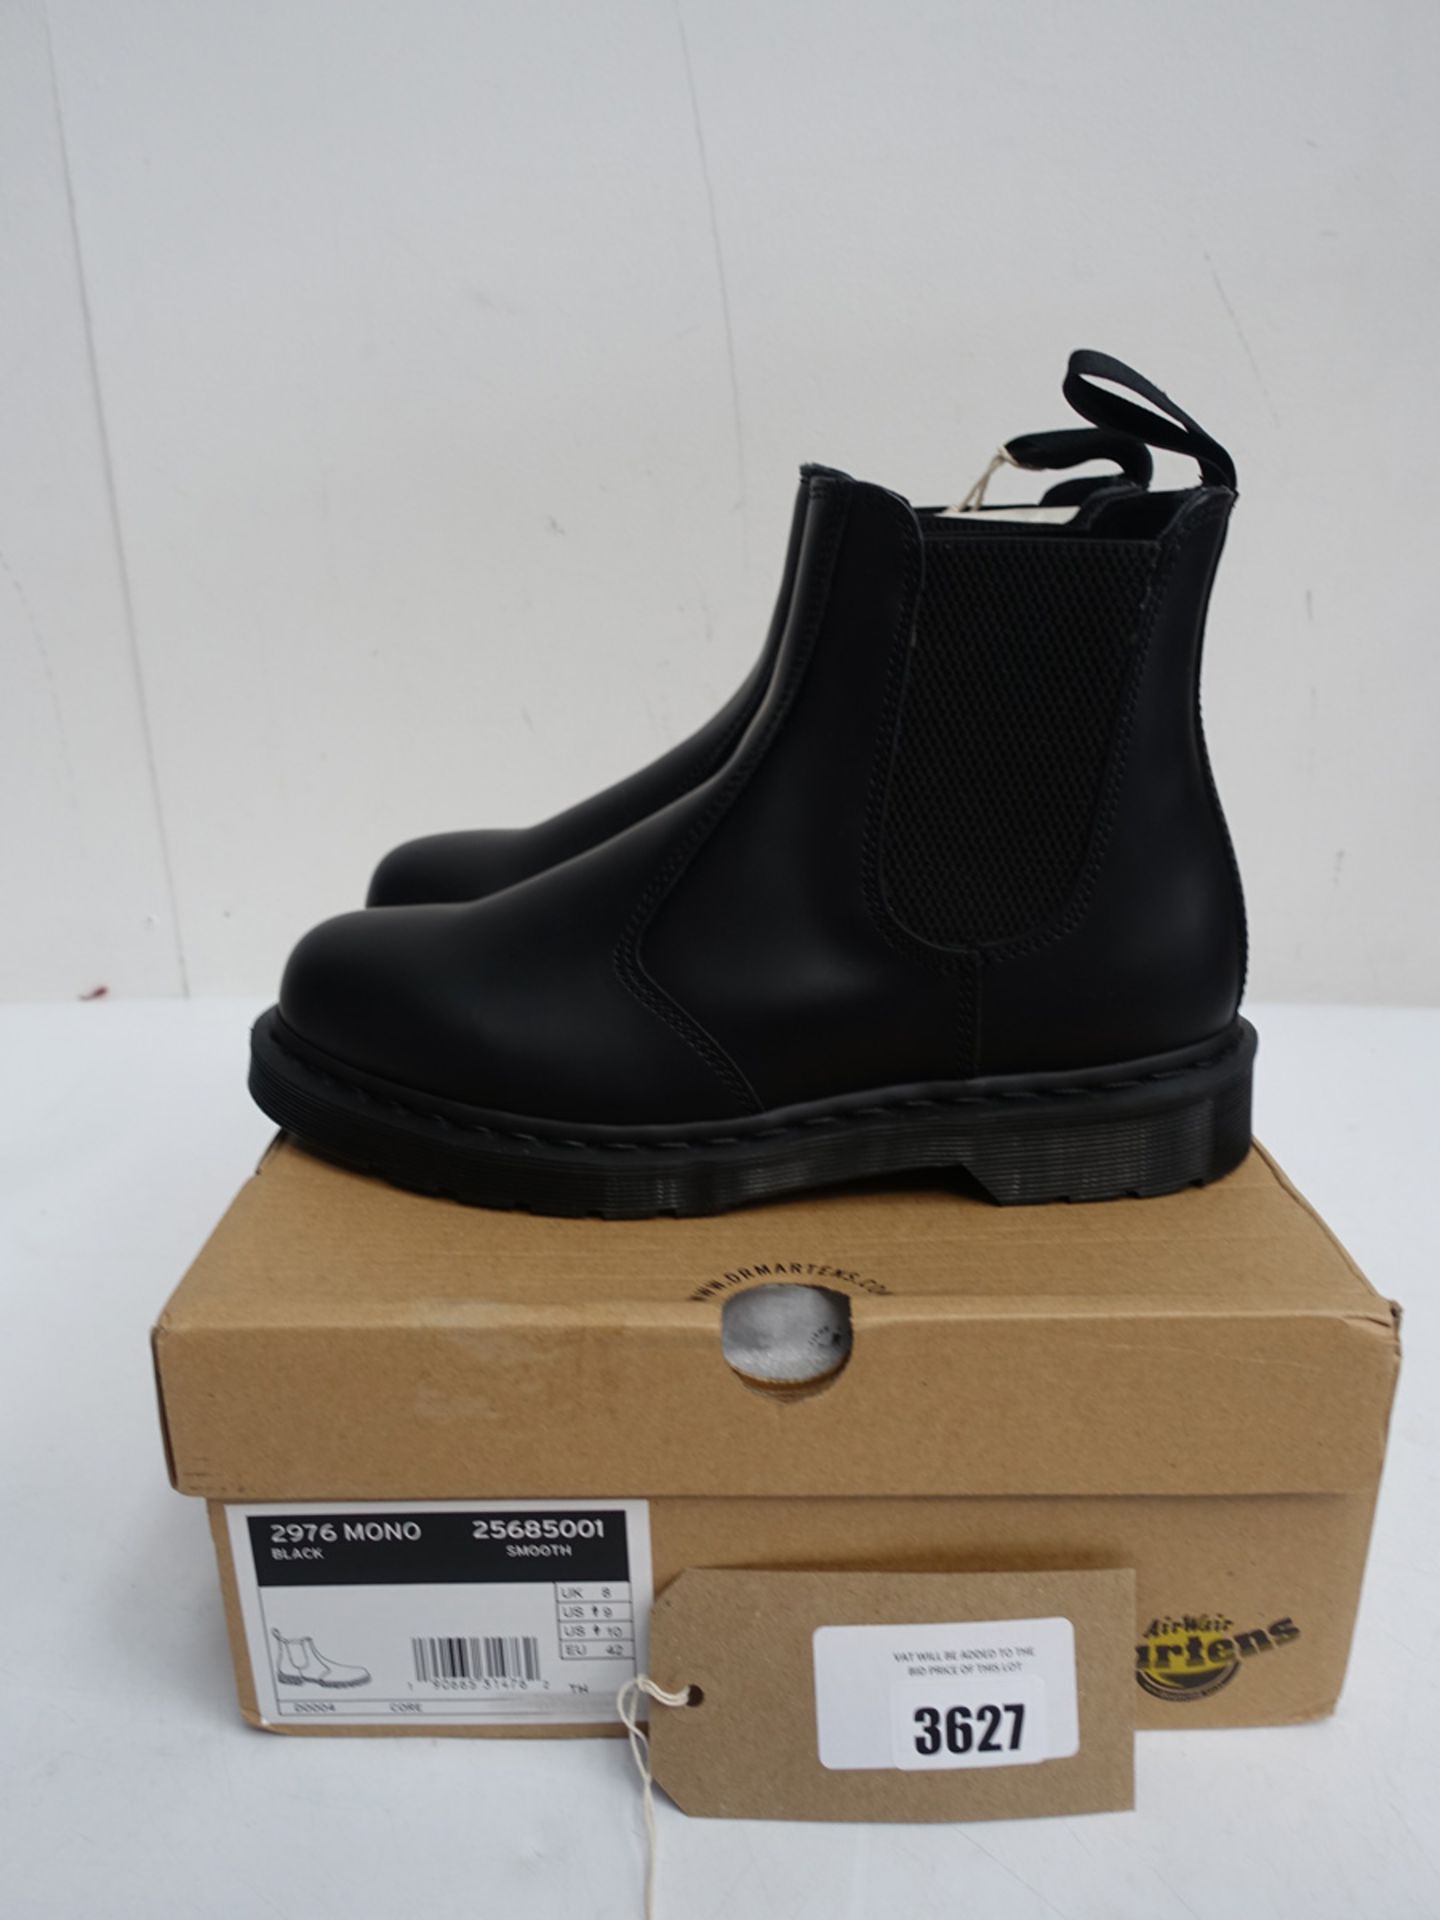 Dr Martens 2976 Mono boots size 8